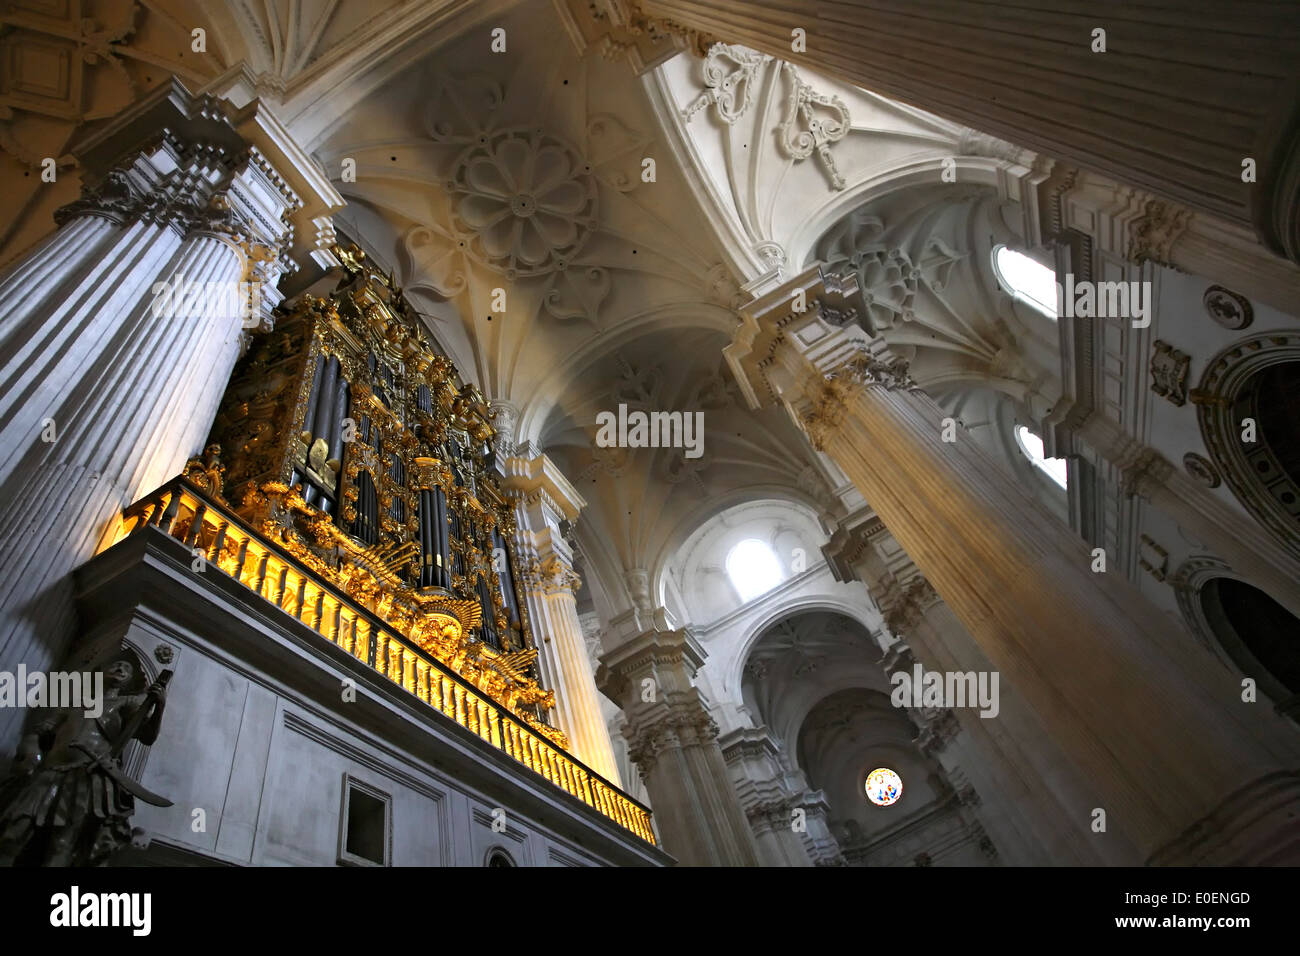 Faisceau de lumière, intérieur de la Cathédrale de Grenade (Cathédrale de l'Incarnation), Granada, Espagne Banque D'Images